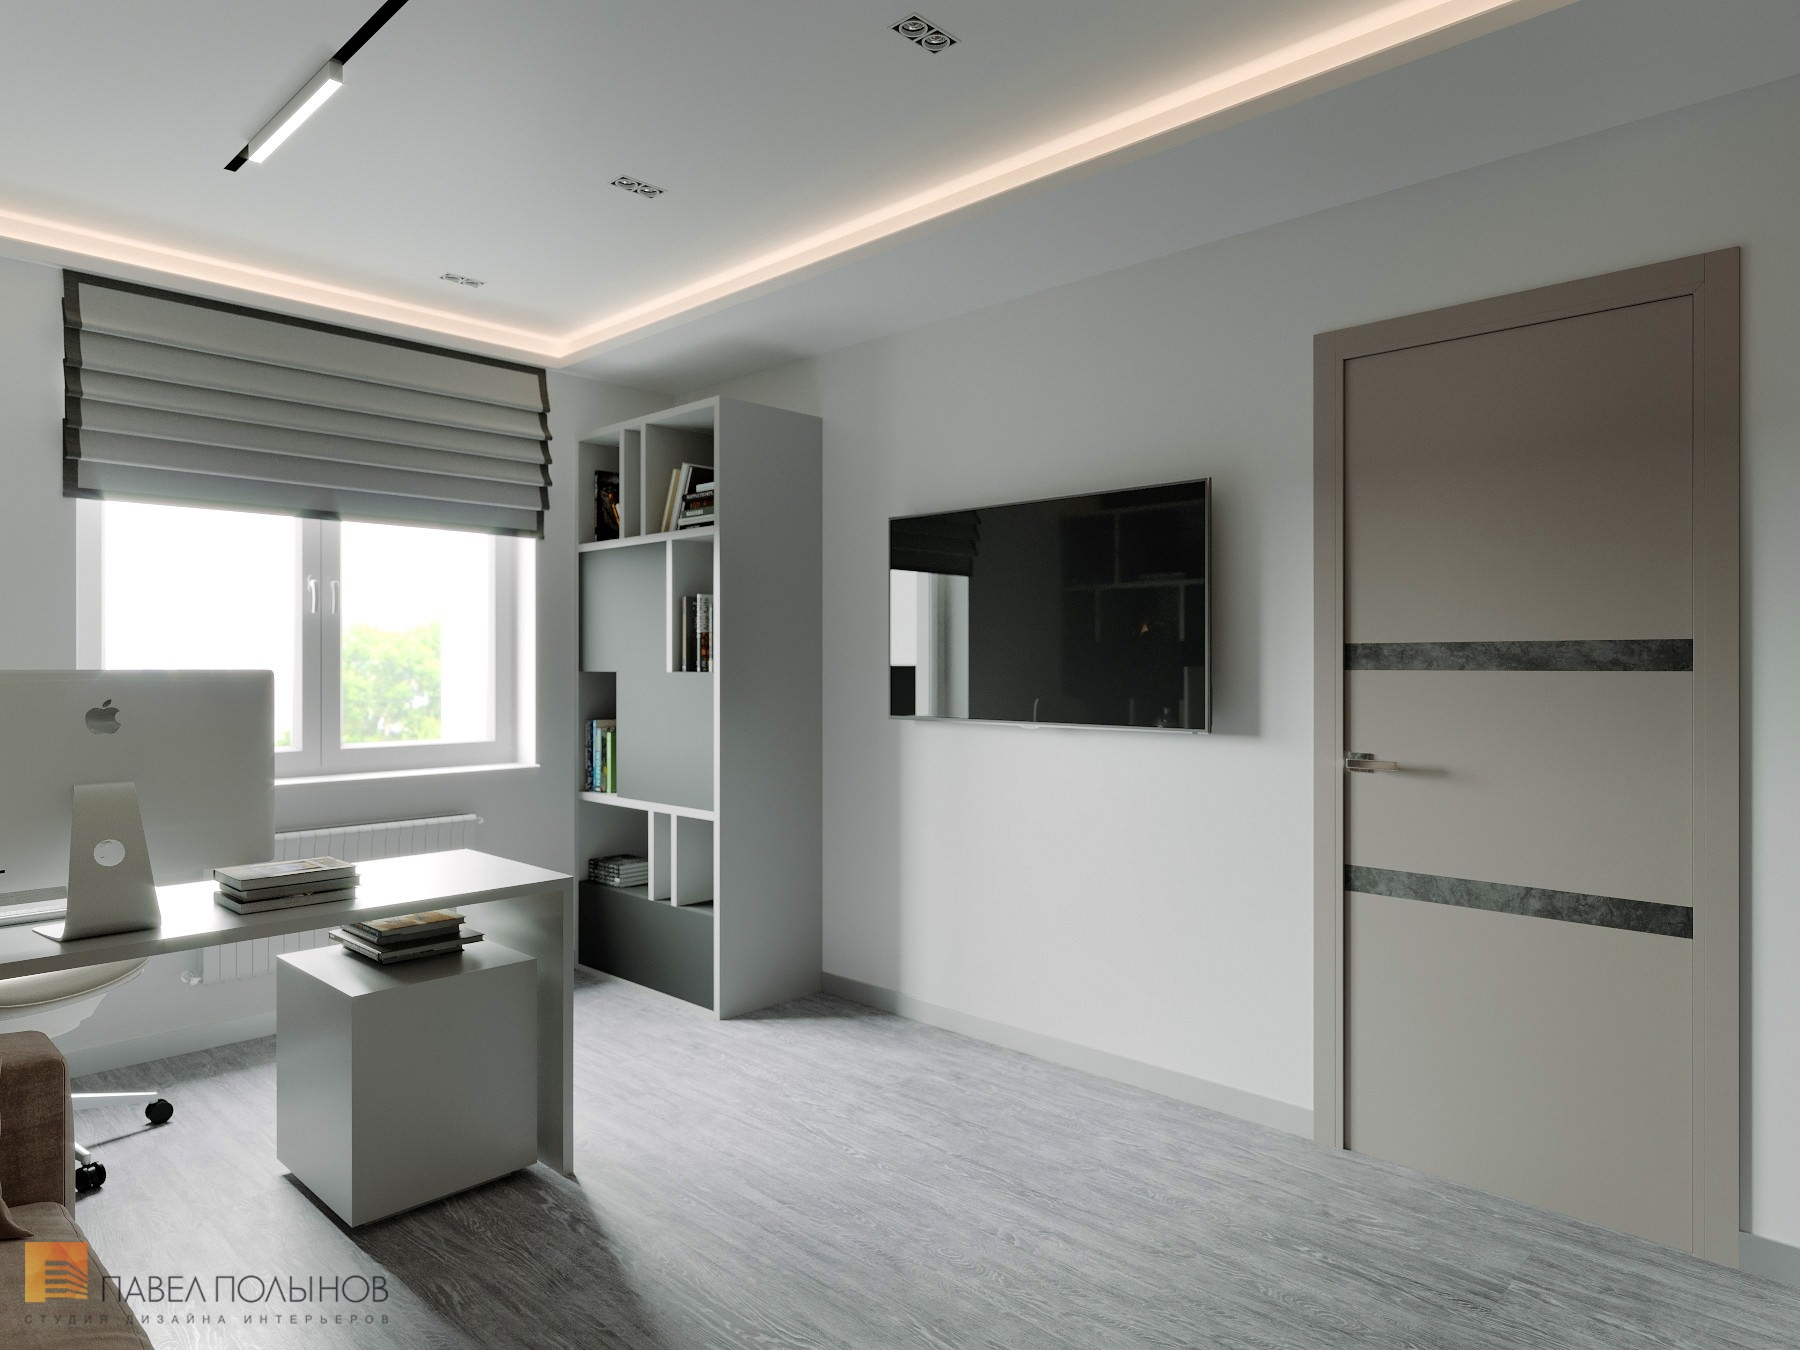 Фото интерьер домашнего кабинета из проекта «Дизайн интерьер квартиры в ЖК «Кремлевские звезды», современный стиль, 133 кв.м.»